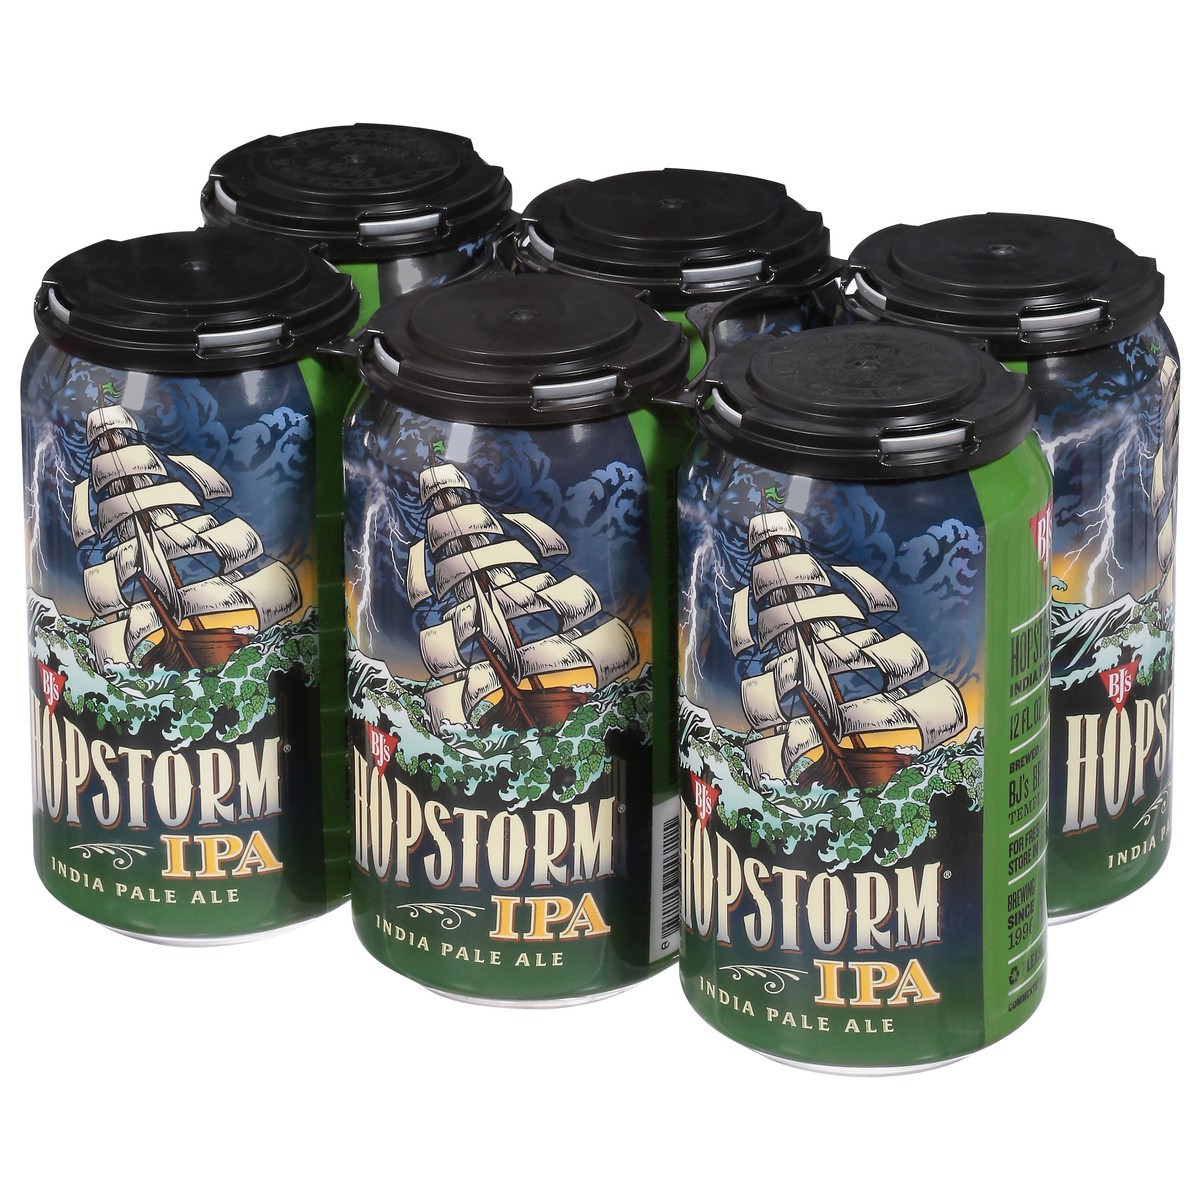 slide 3 of 9, BJ's IPA Hopstorm Beer 6 - 12 fl oz Cans, 6 ct; 12 oz